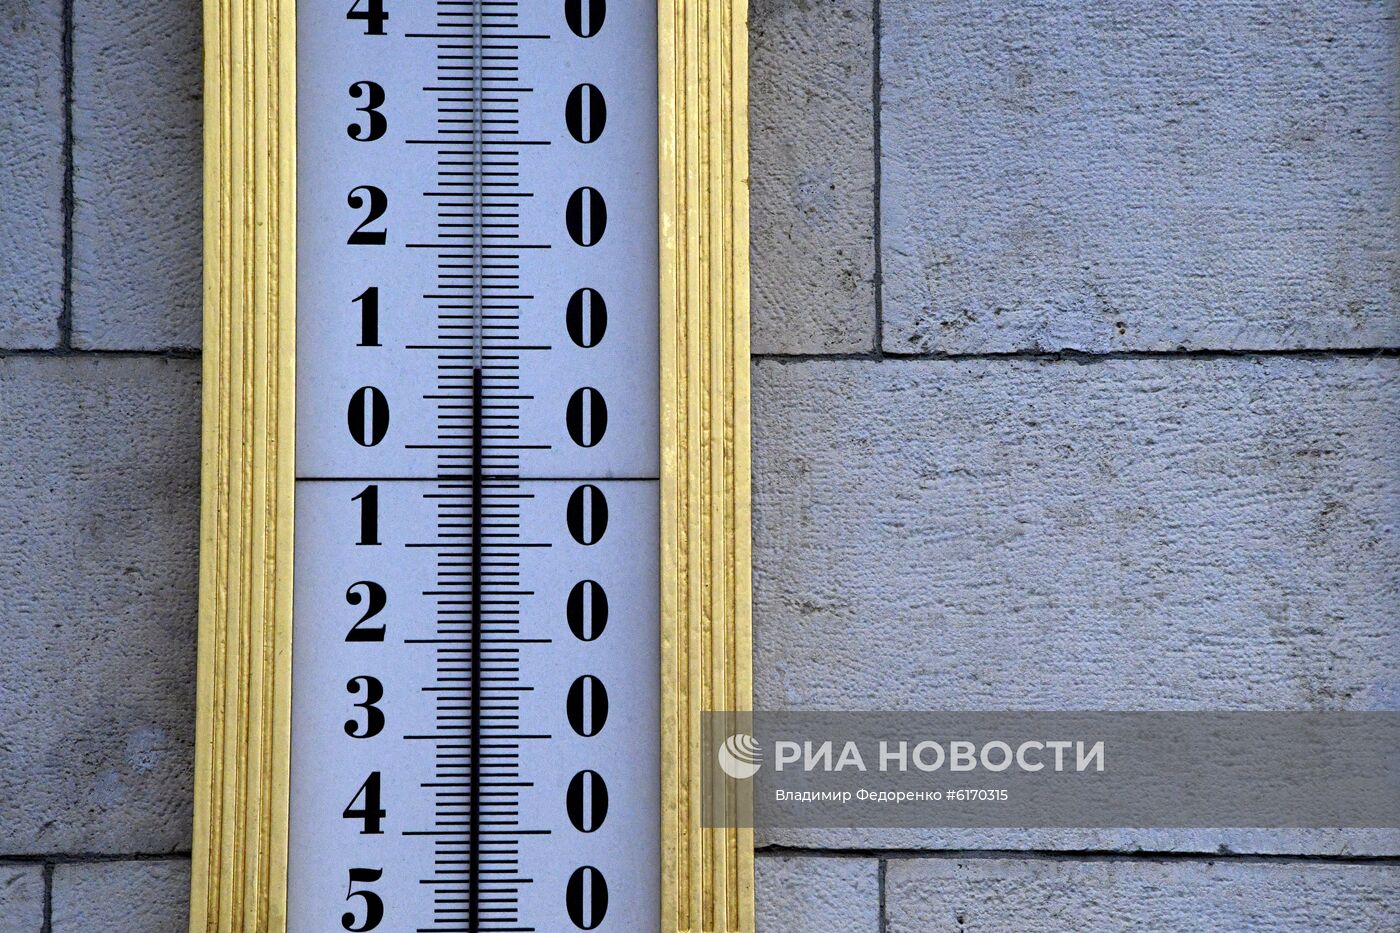 Теплая погода в Москве и Санкт-Петербурге